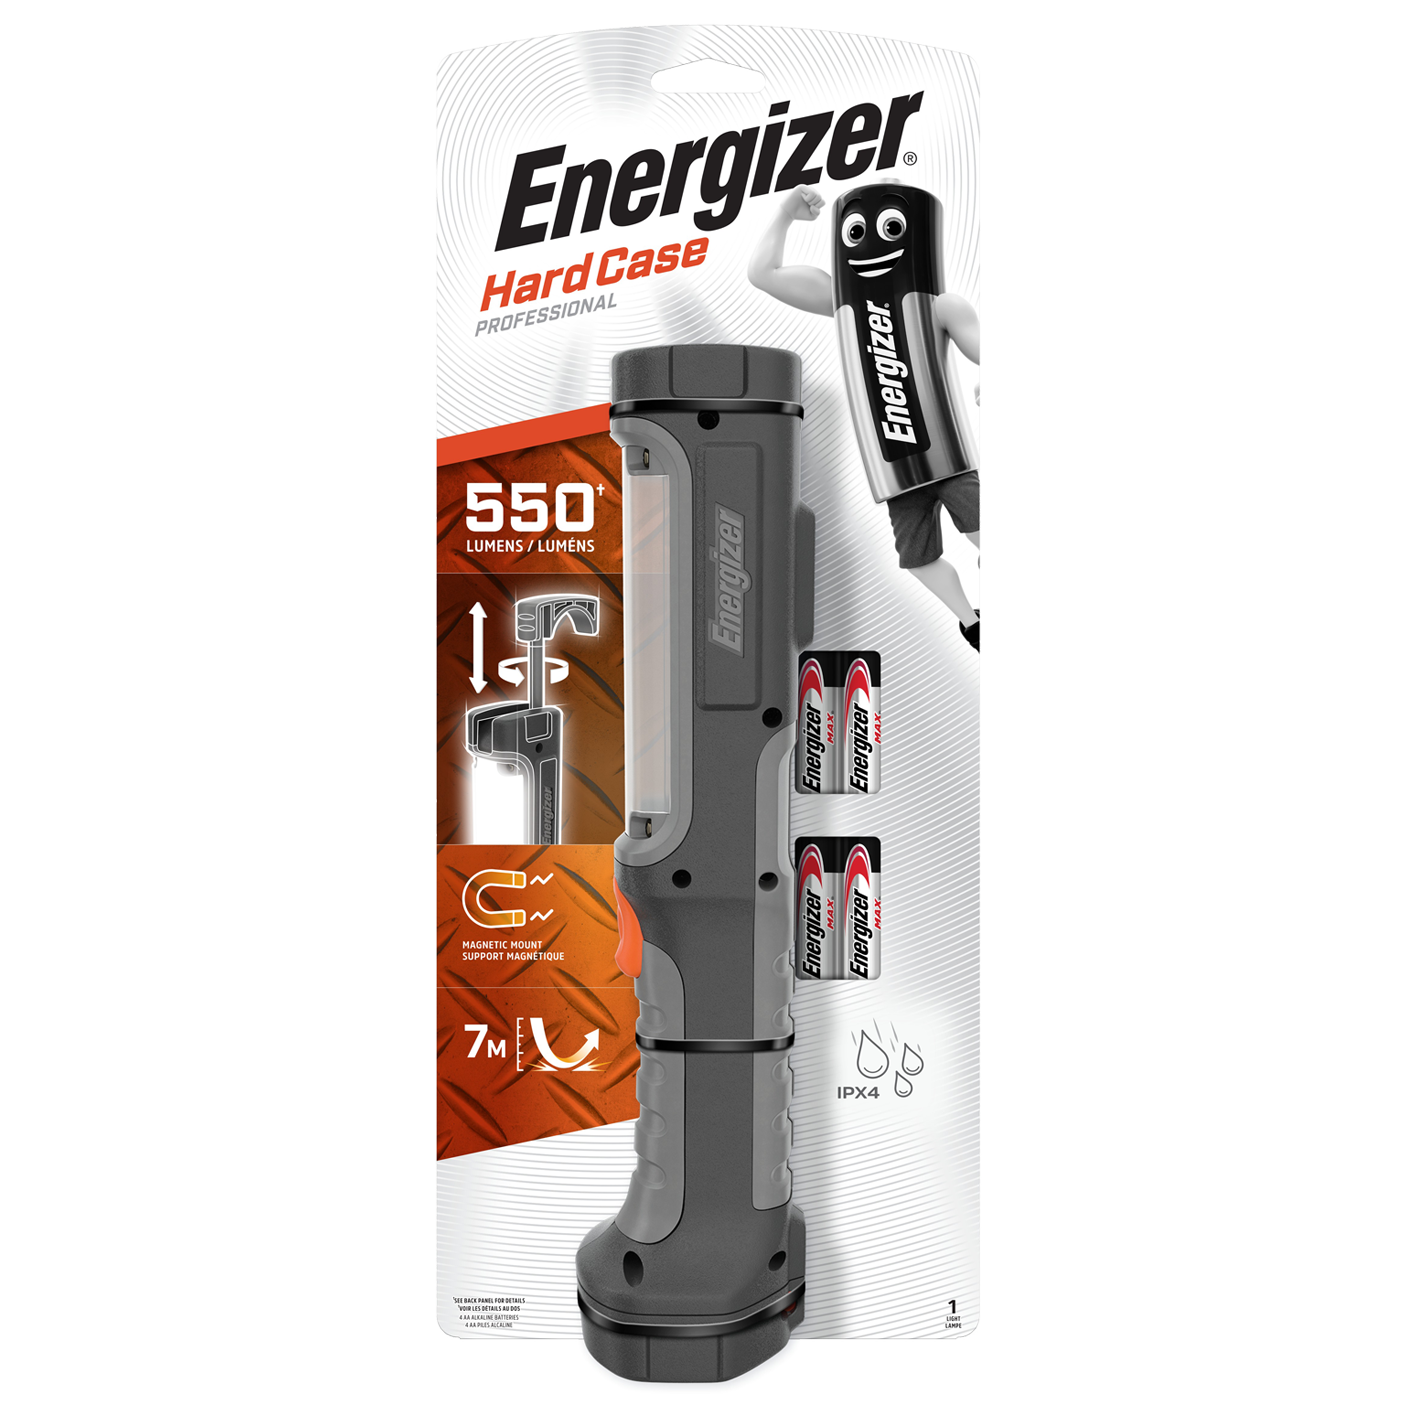 Energizer Hardcase Pro 550 Lumen Arbeitsleuchte mit 4 x AA-Batterien